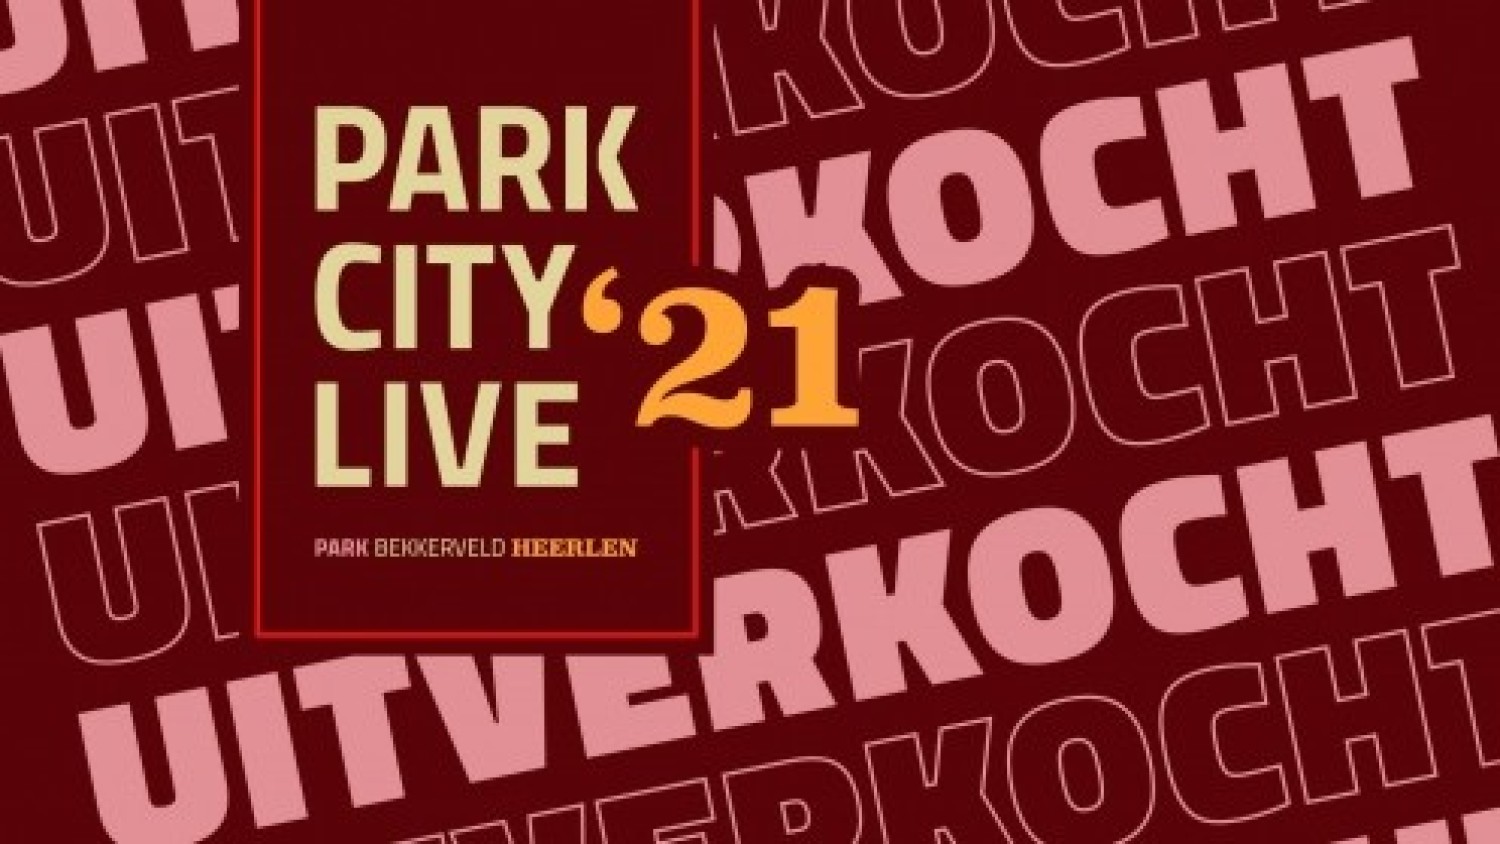 ParkCity Live